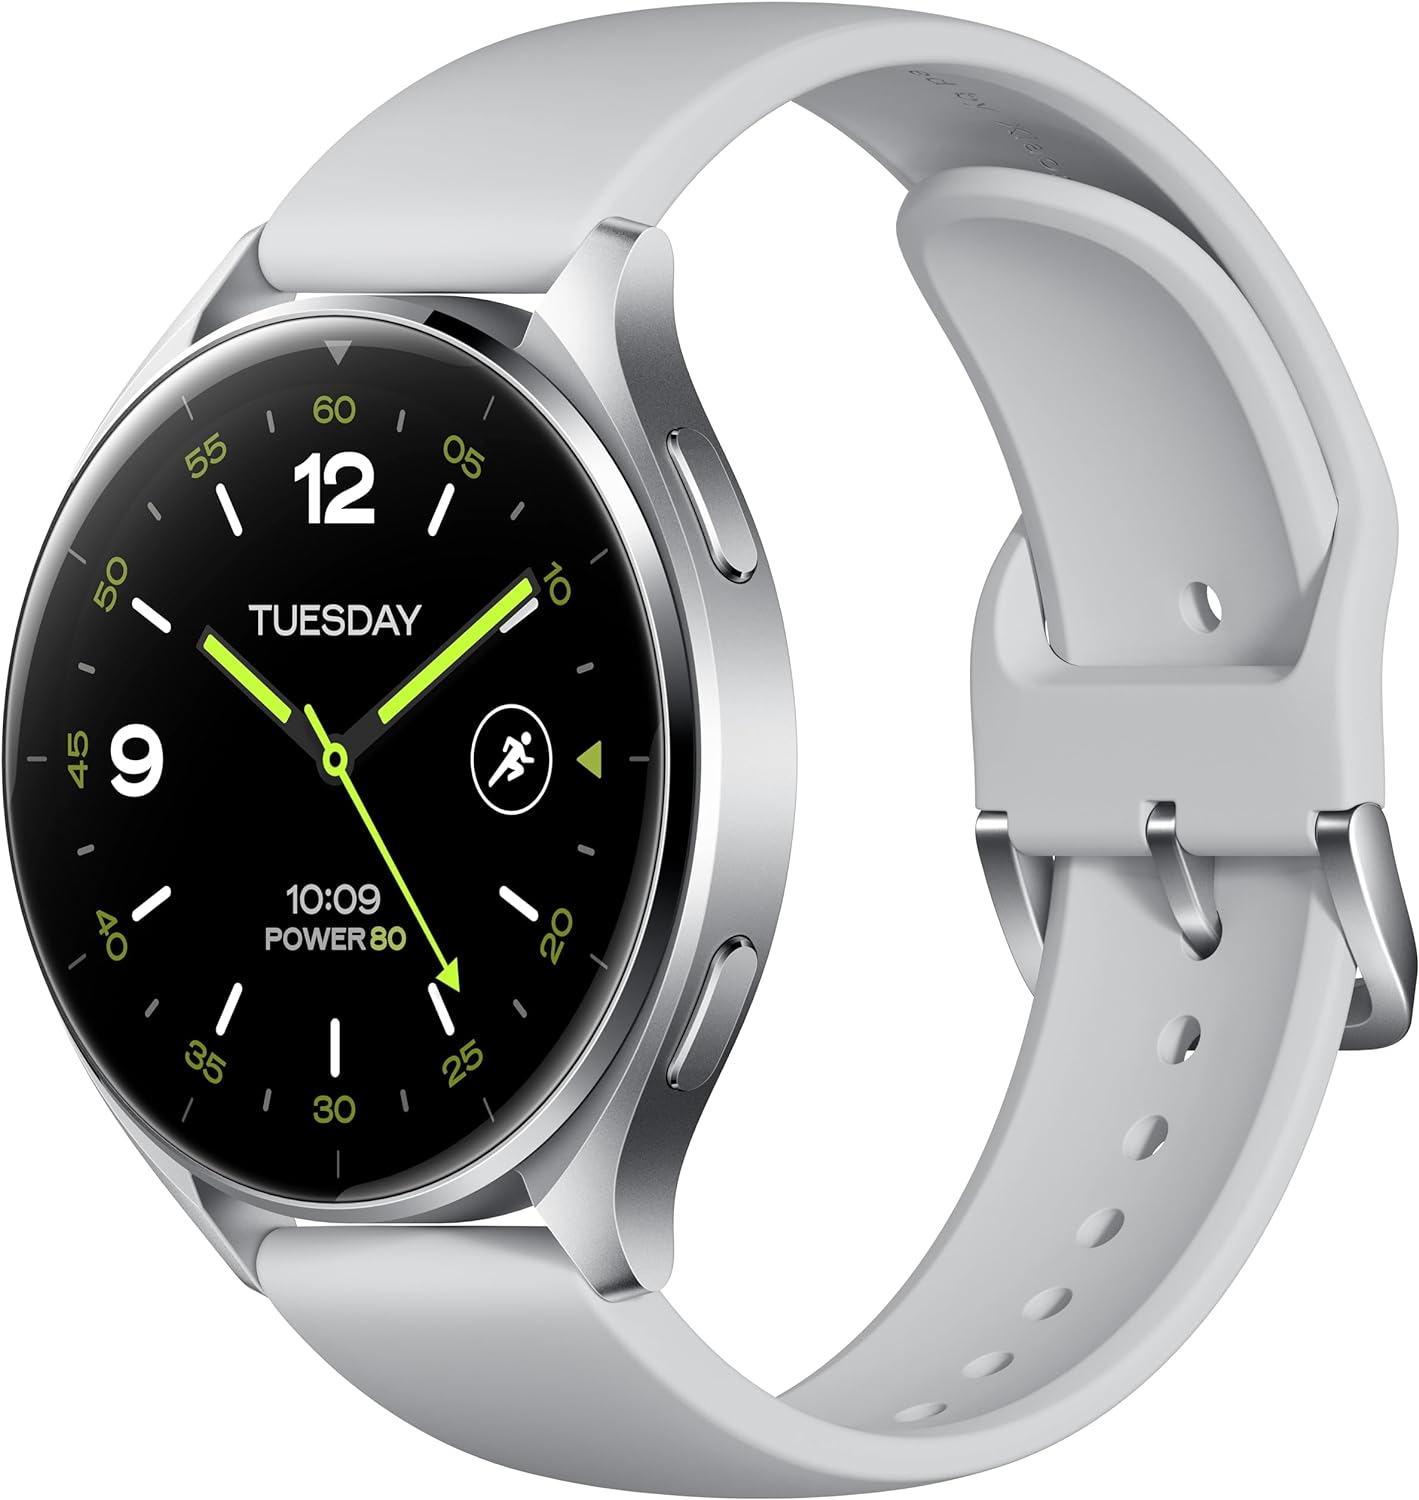 Xiaomi Watch 2 costa meno di 160 euro su Amazon